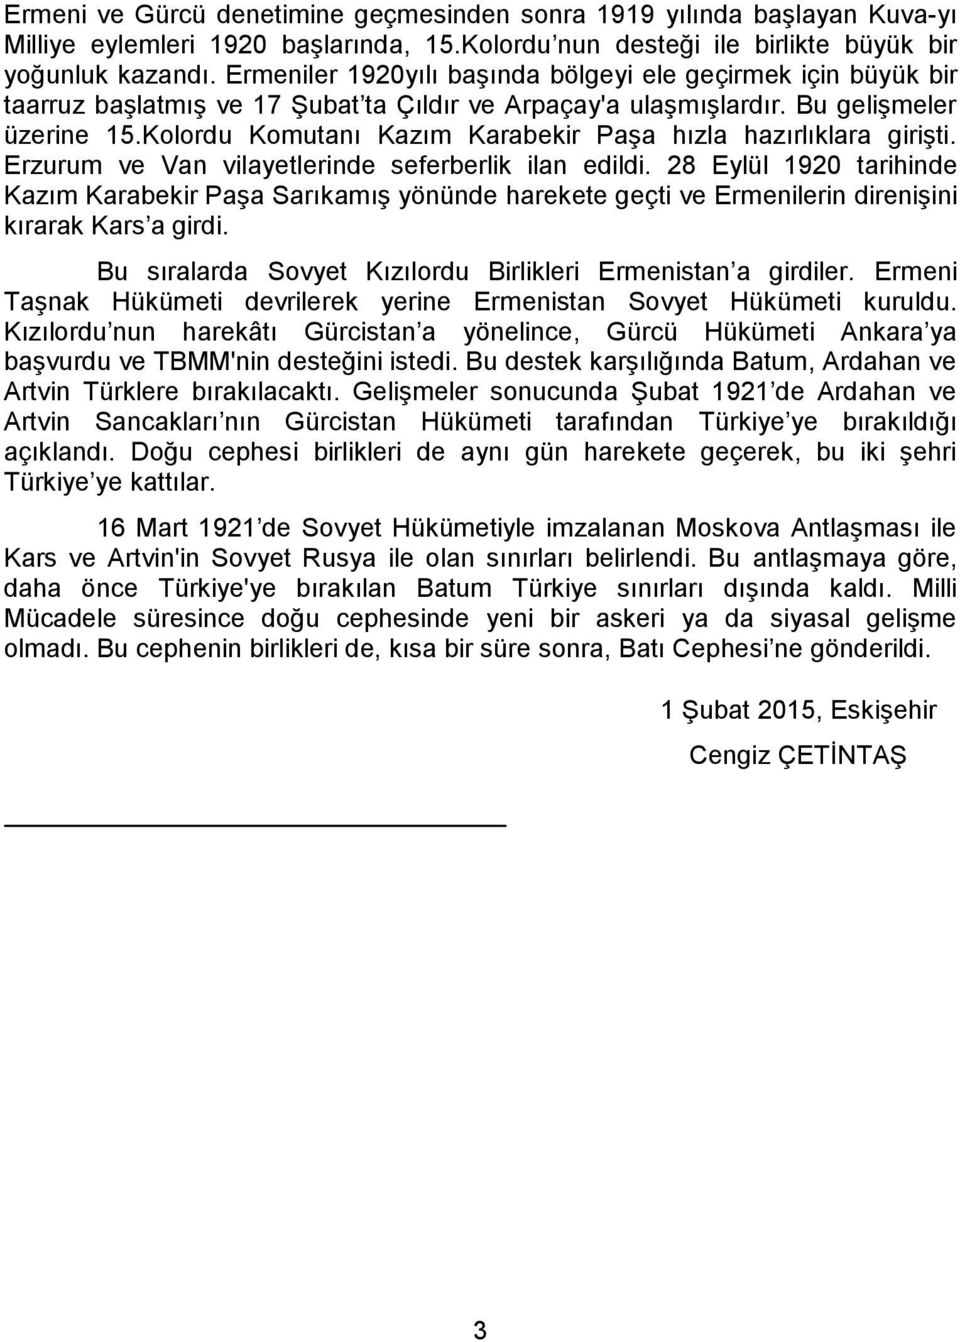 Kolordu Komutanı Kazım Karabekir Paşa hızla hazırlıklara girişti. Erzurum ve Van vilayetlerinde seferberlik ilan edildi.